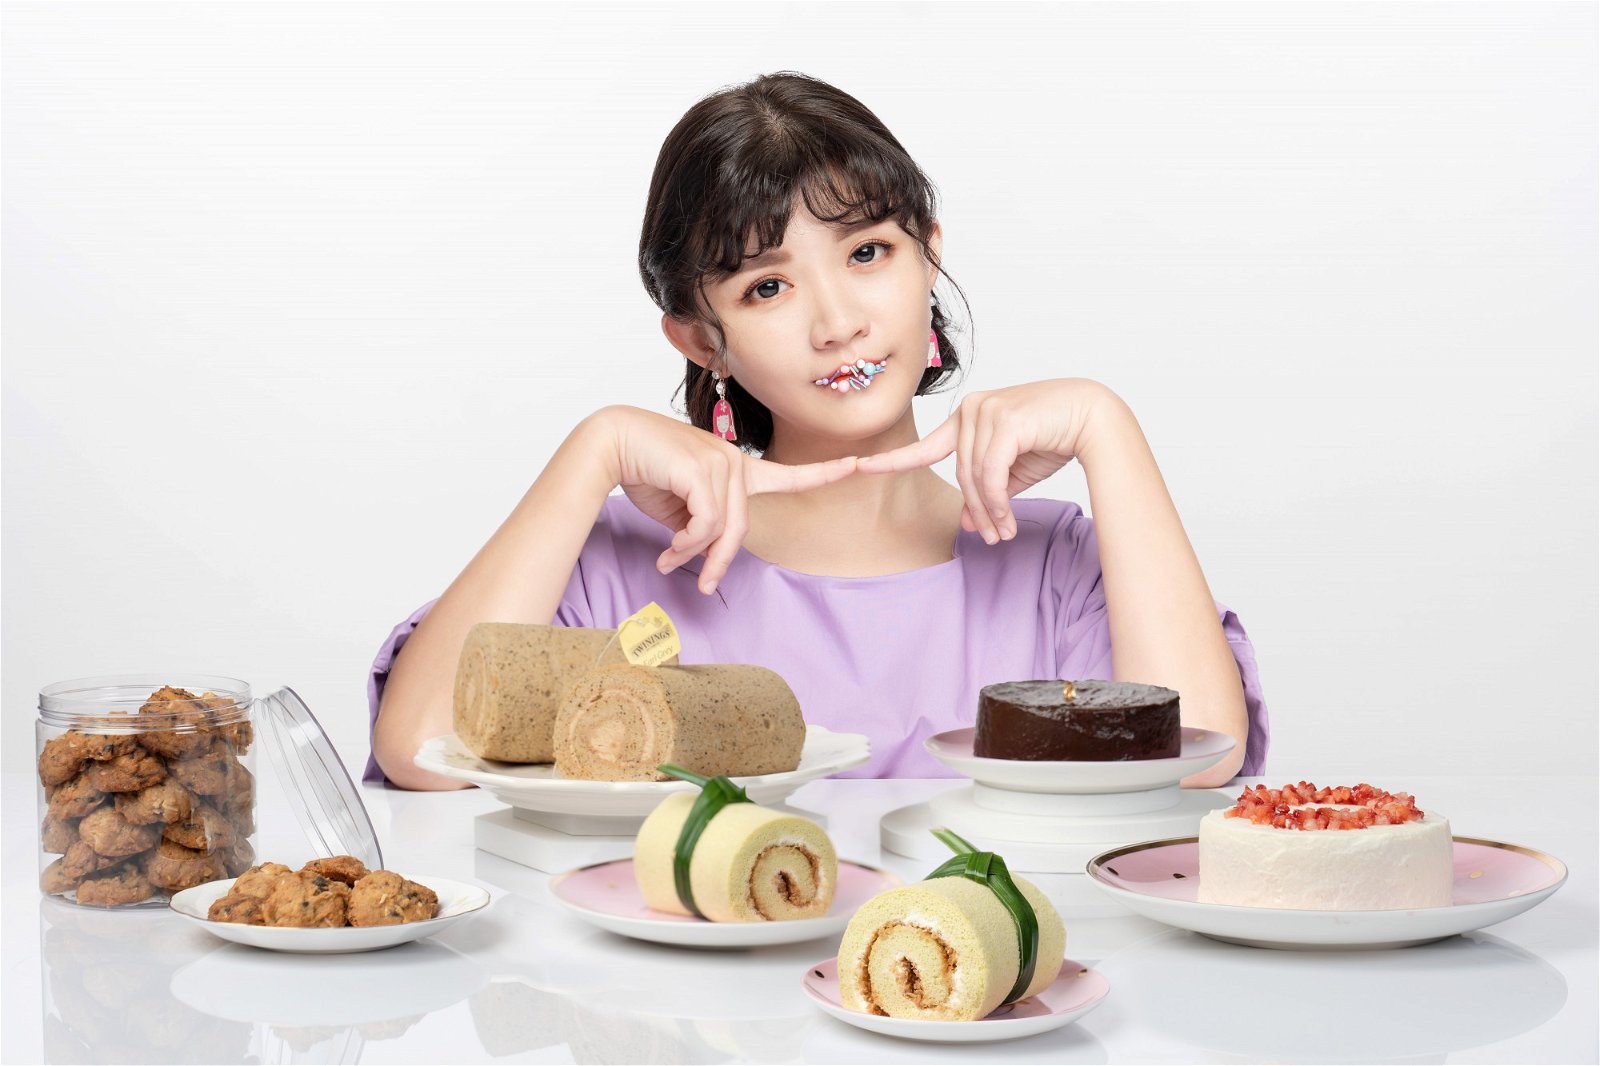 王雪晶与友人创业，开发“ Time For Tea By Onni” 手工甜品品牌，希望大家可以快乐吃甜品。